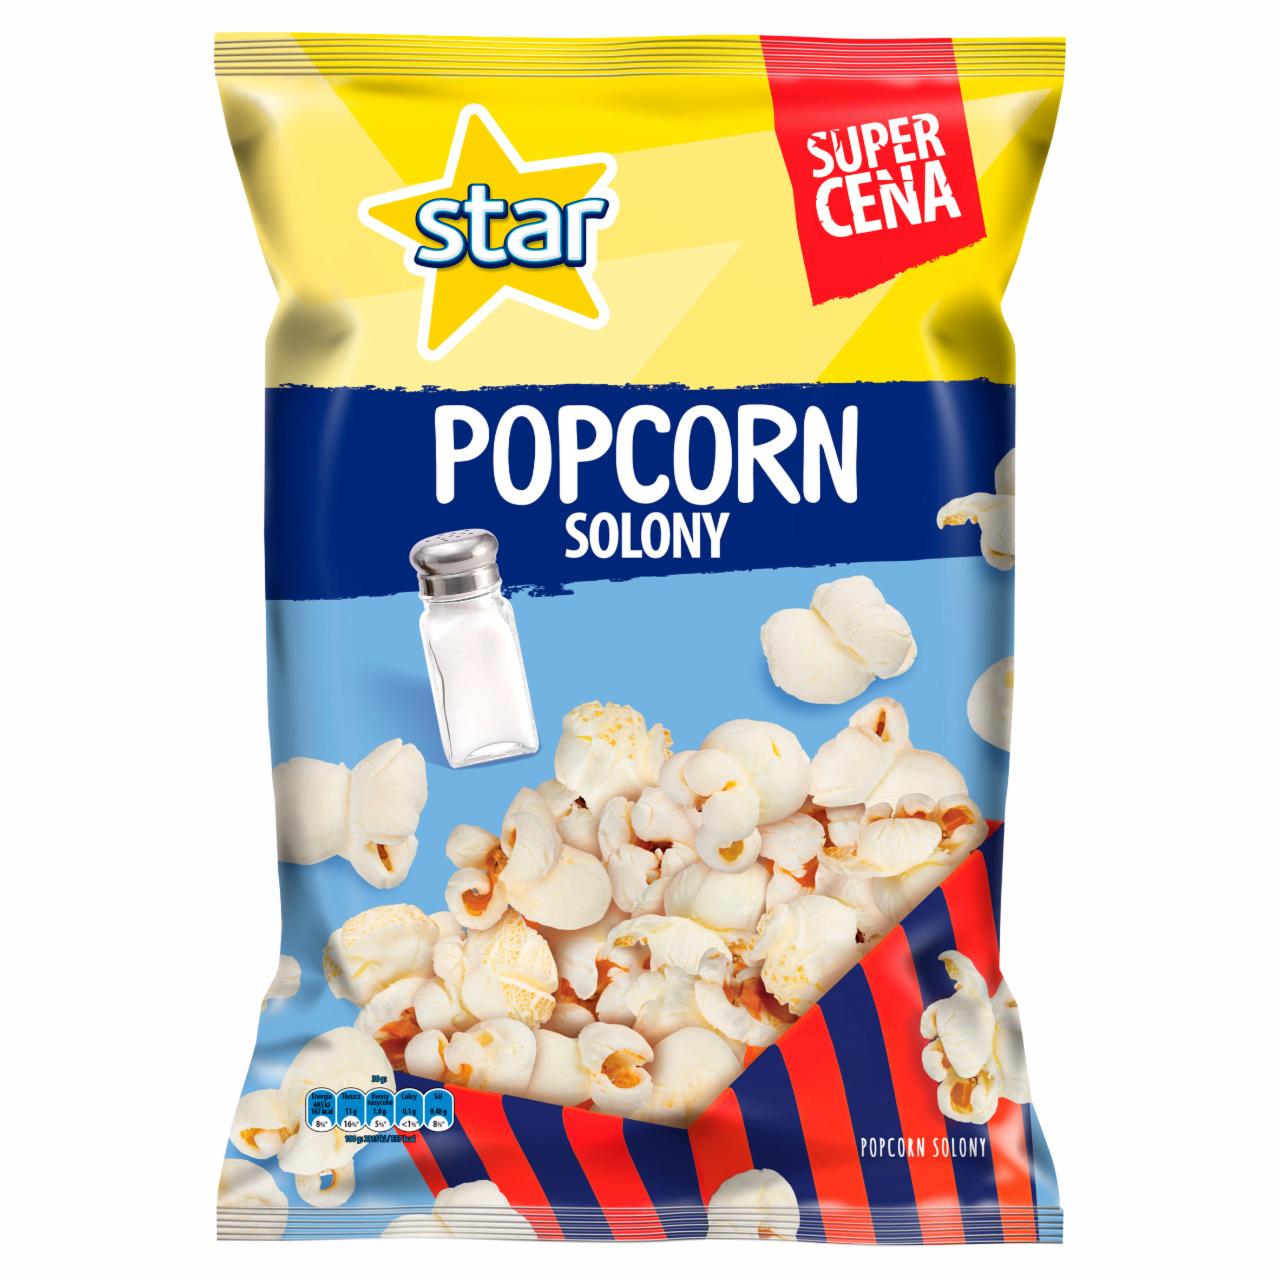 Zdjęcia - Popcorn solony Star